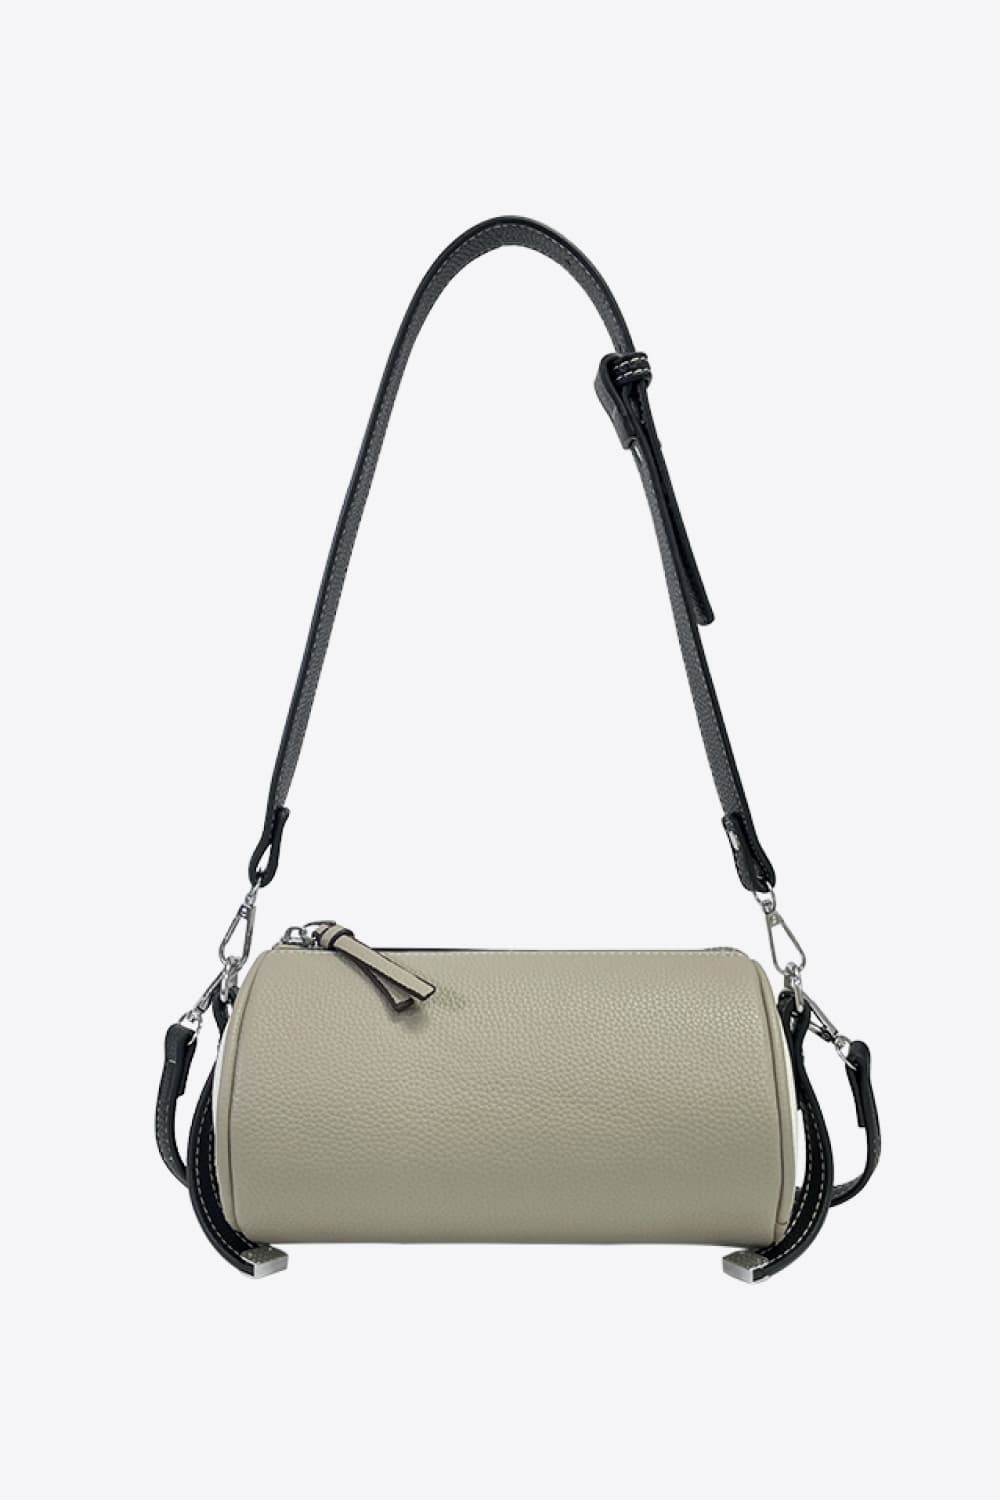 Sling Bag for Women , Side purse , Cross body sling bag for girls , Small  side sling bag ( Black Blue ) CARRY CARAT